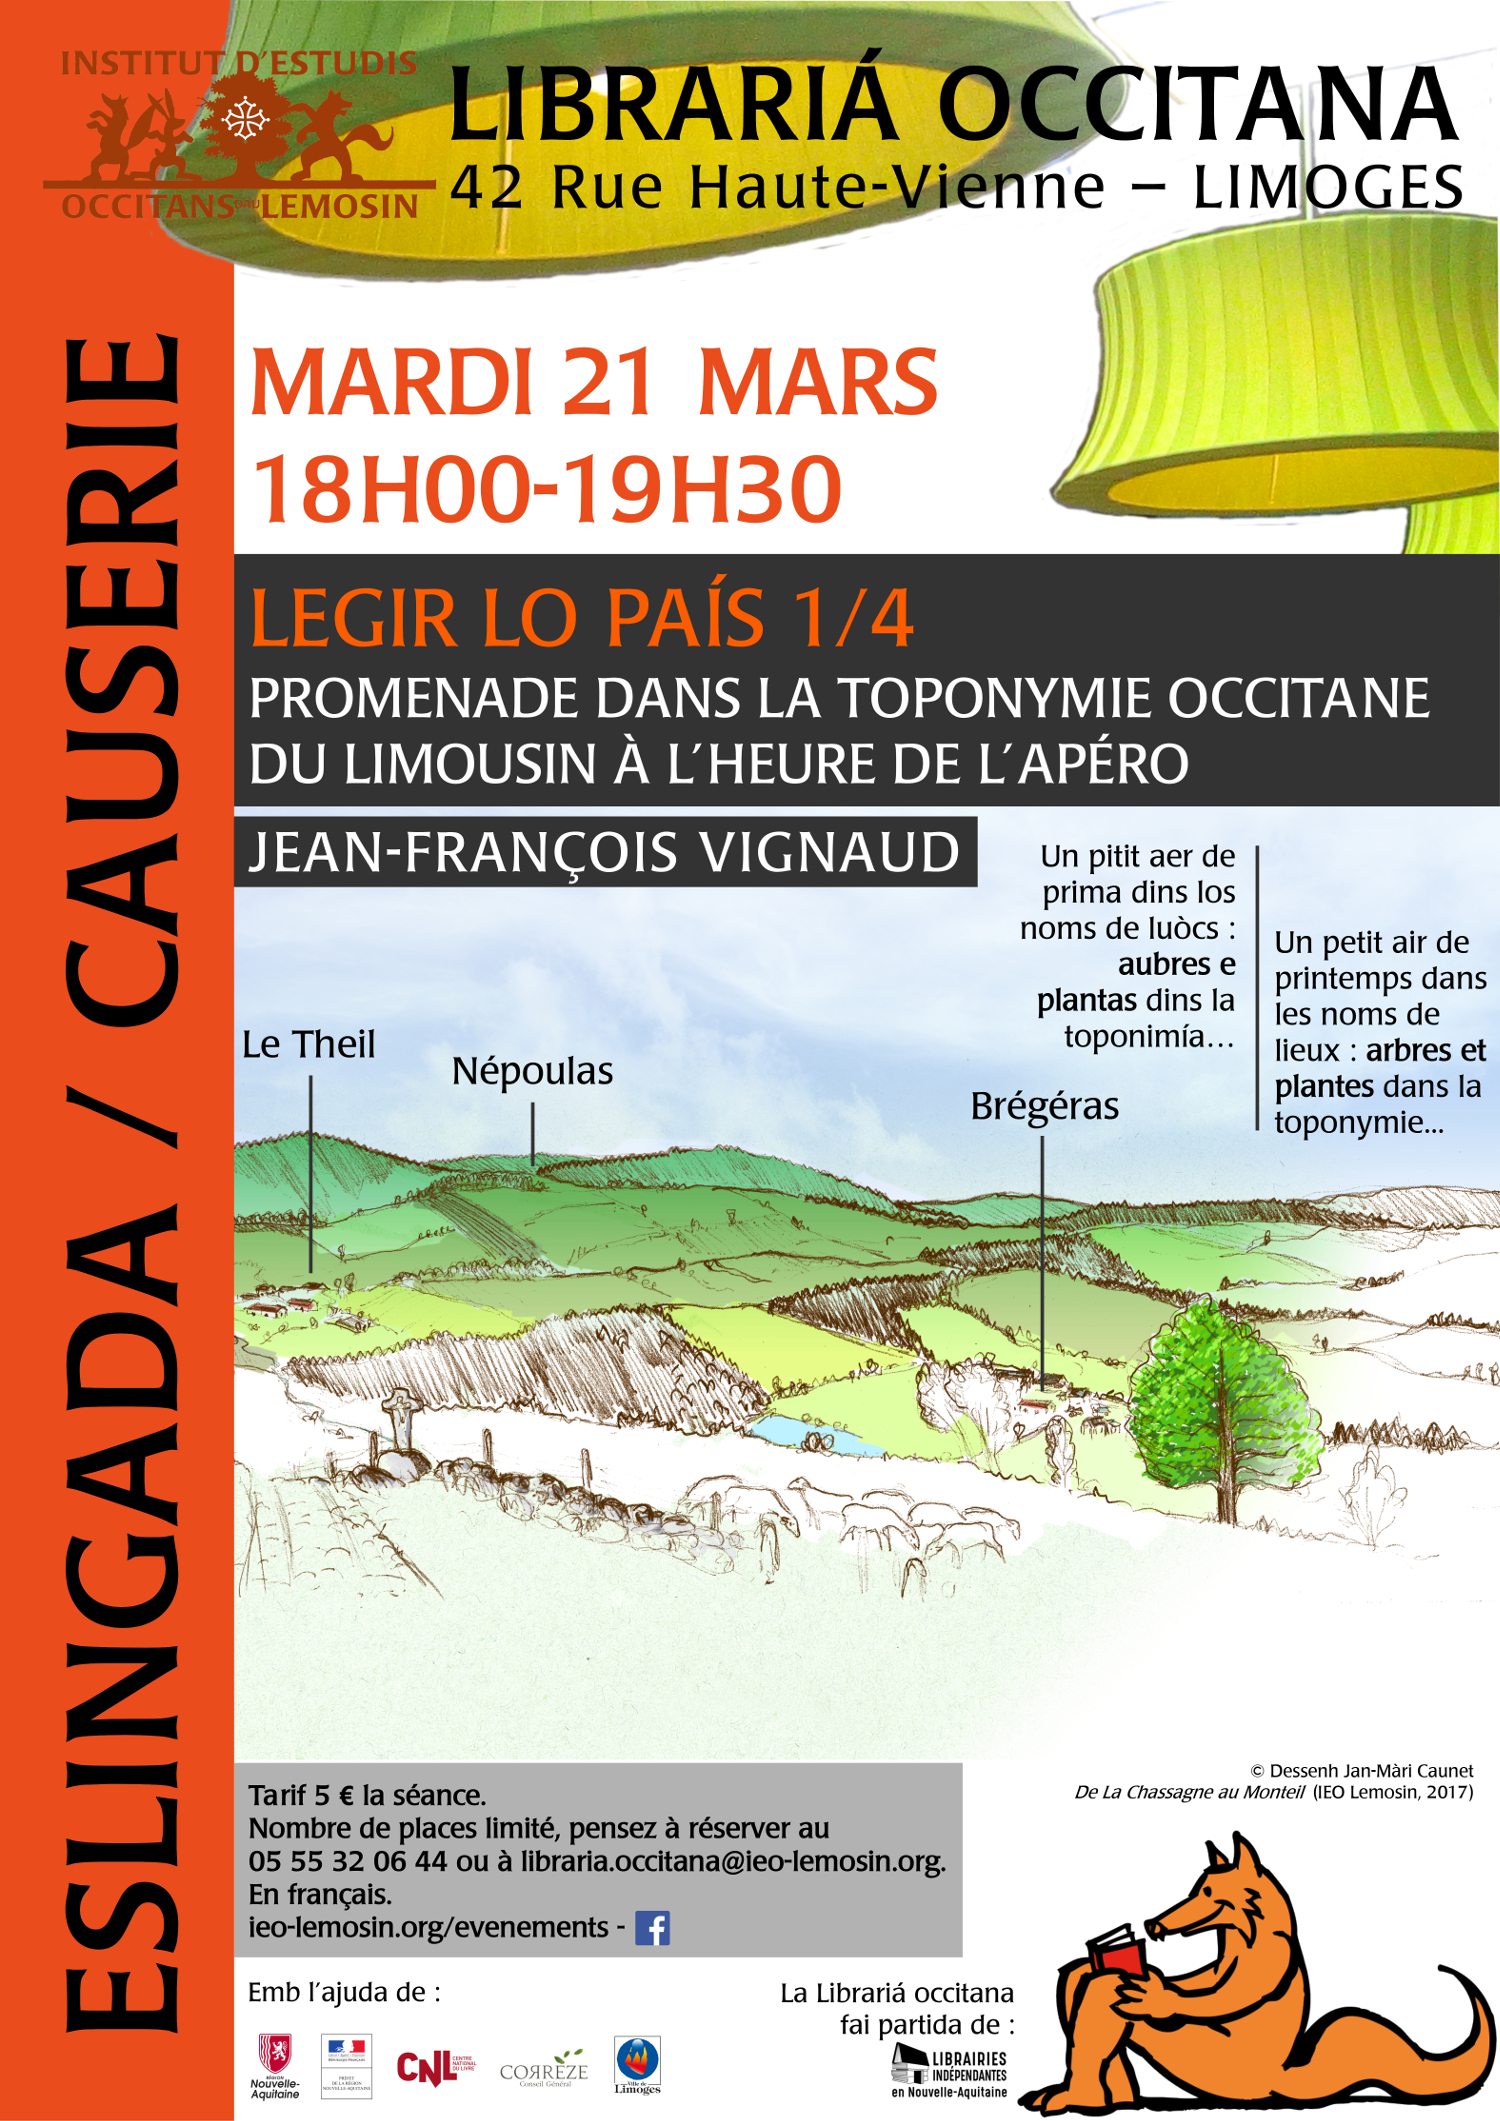 Promenade dans la toponymie occitane du Limousin à l'heure de l'apéro, animées par Jean-François Vignaud.